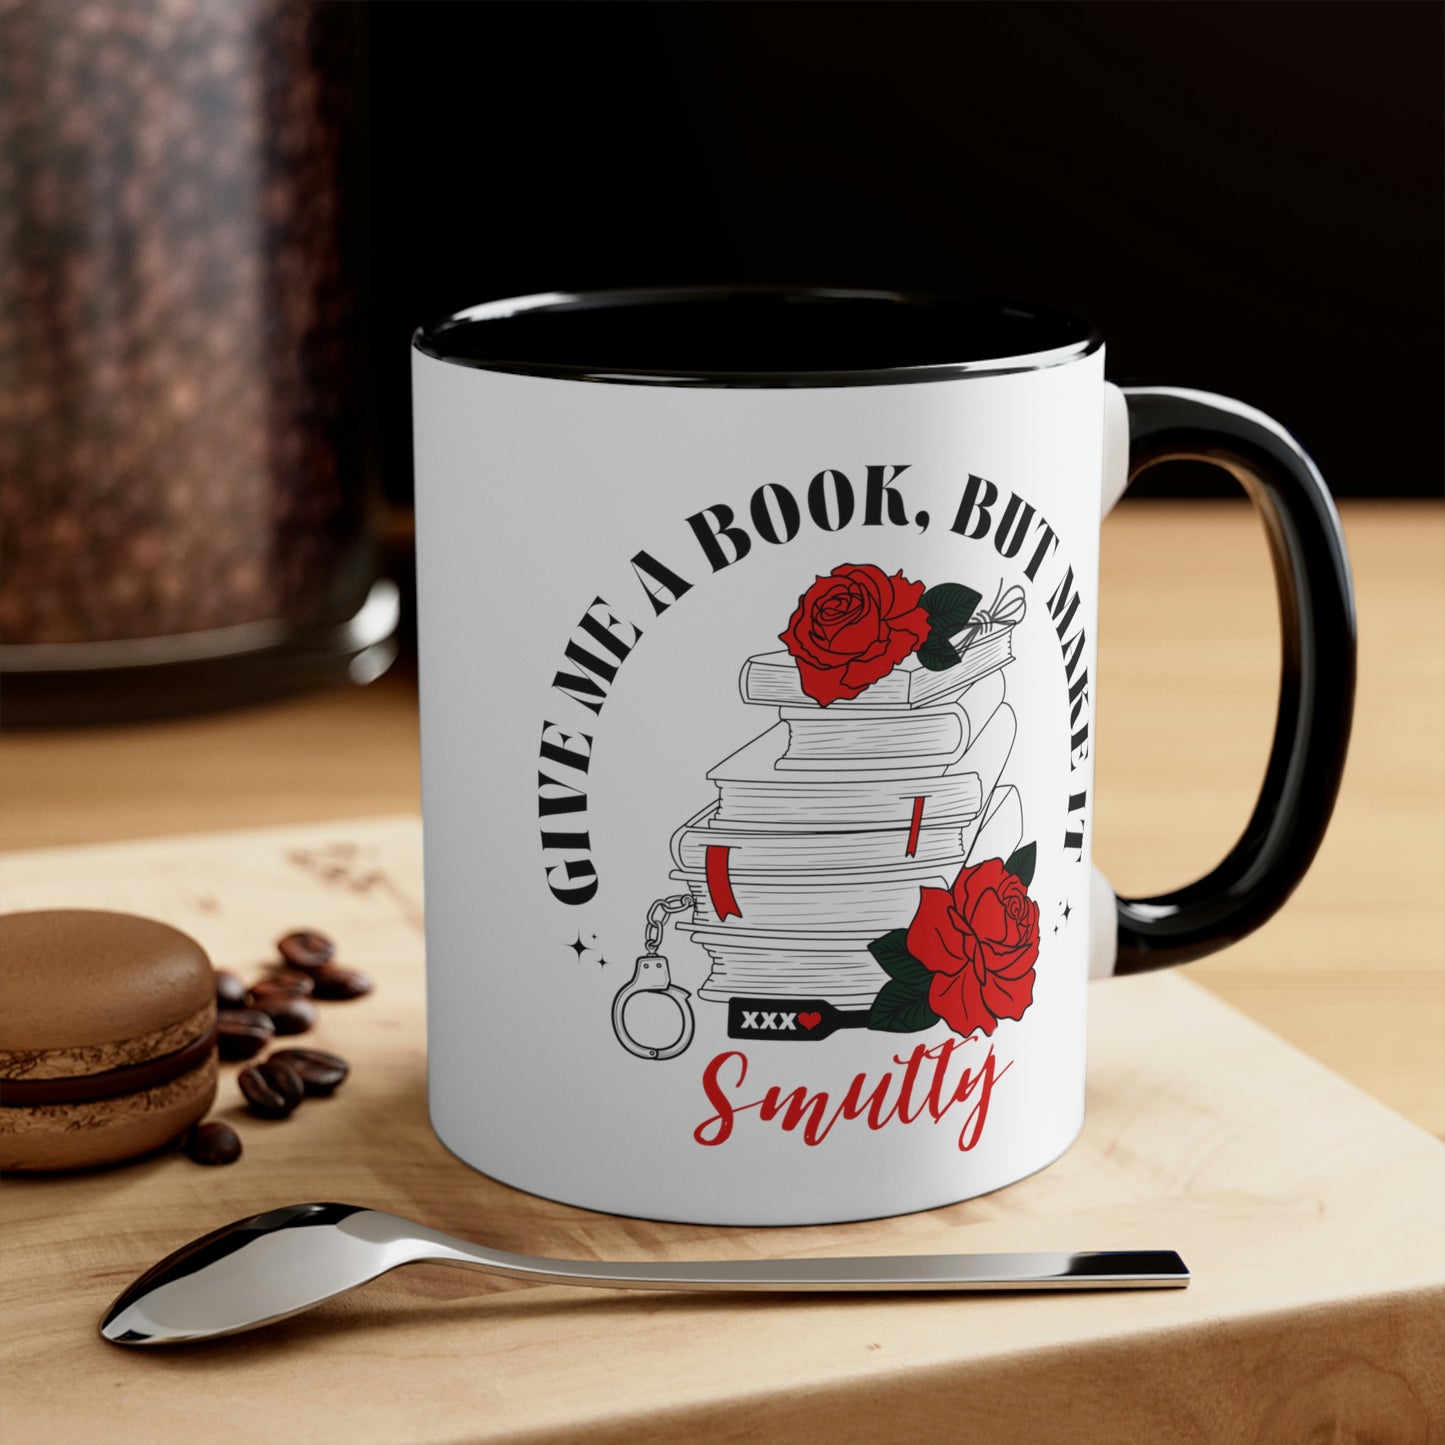 Make it smutty mug